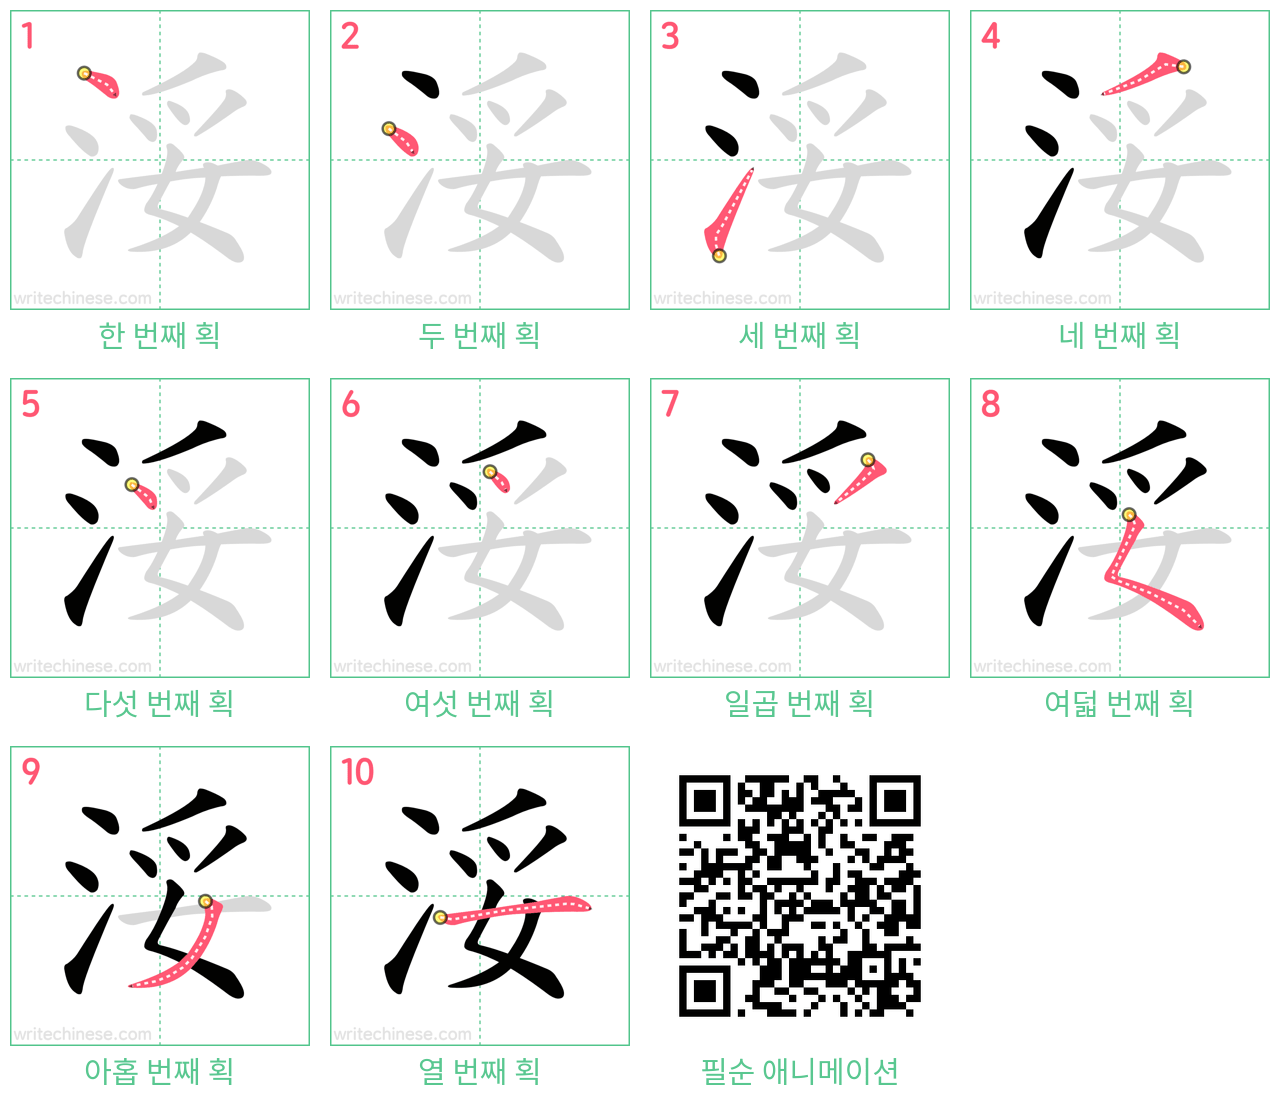 浽 step-by-step stroke order diagrams